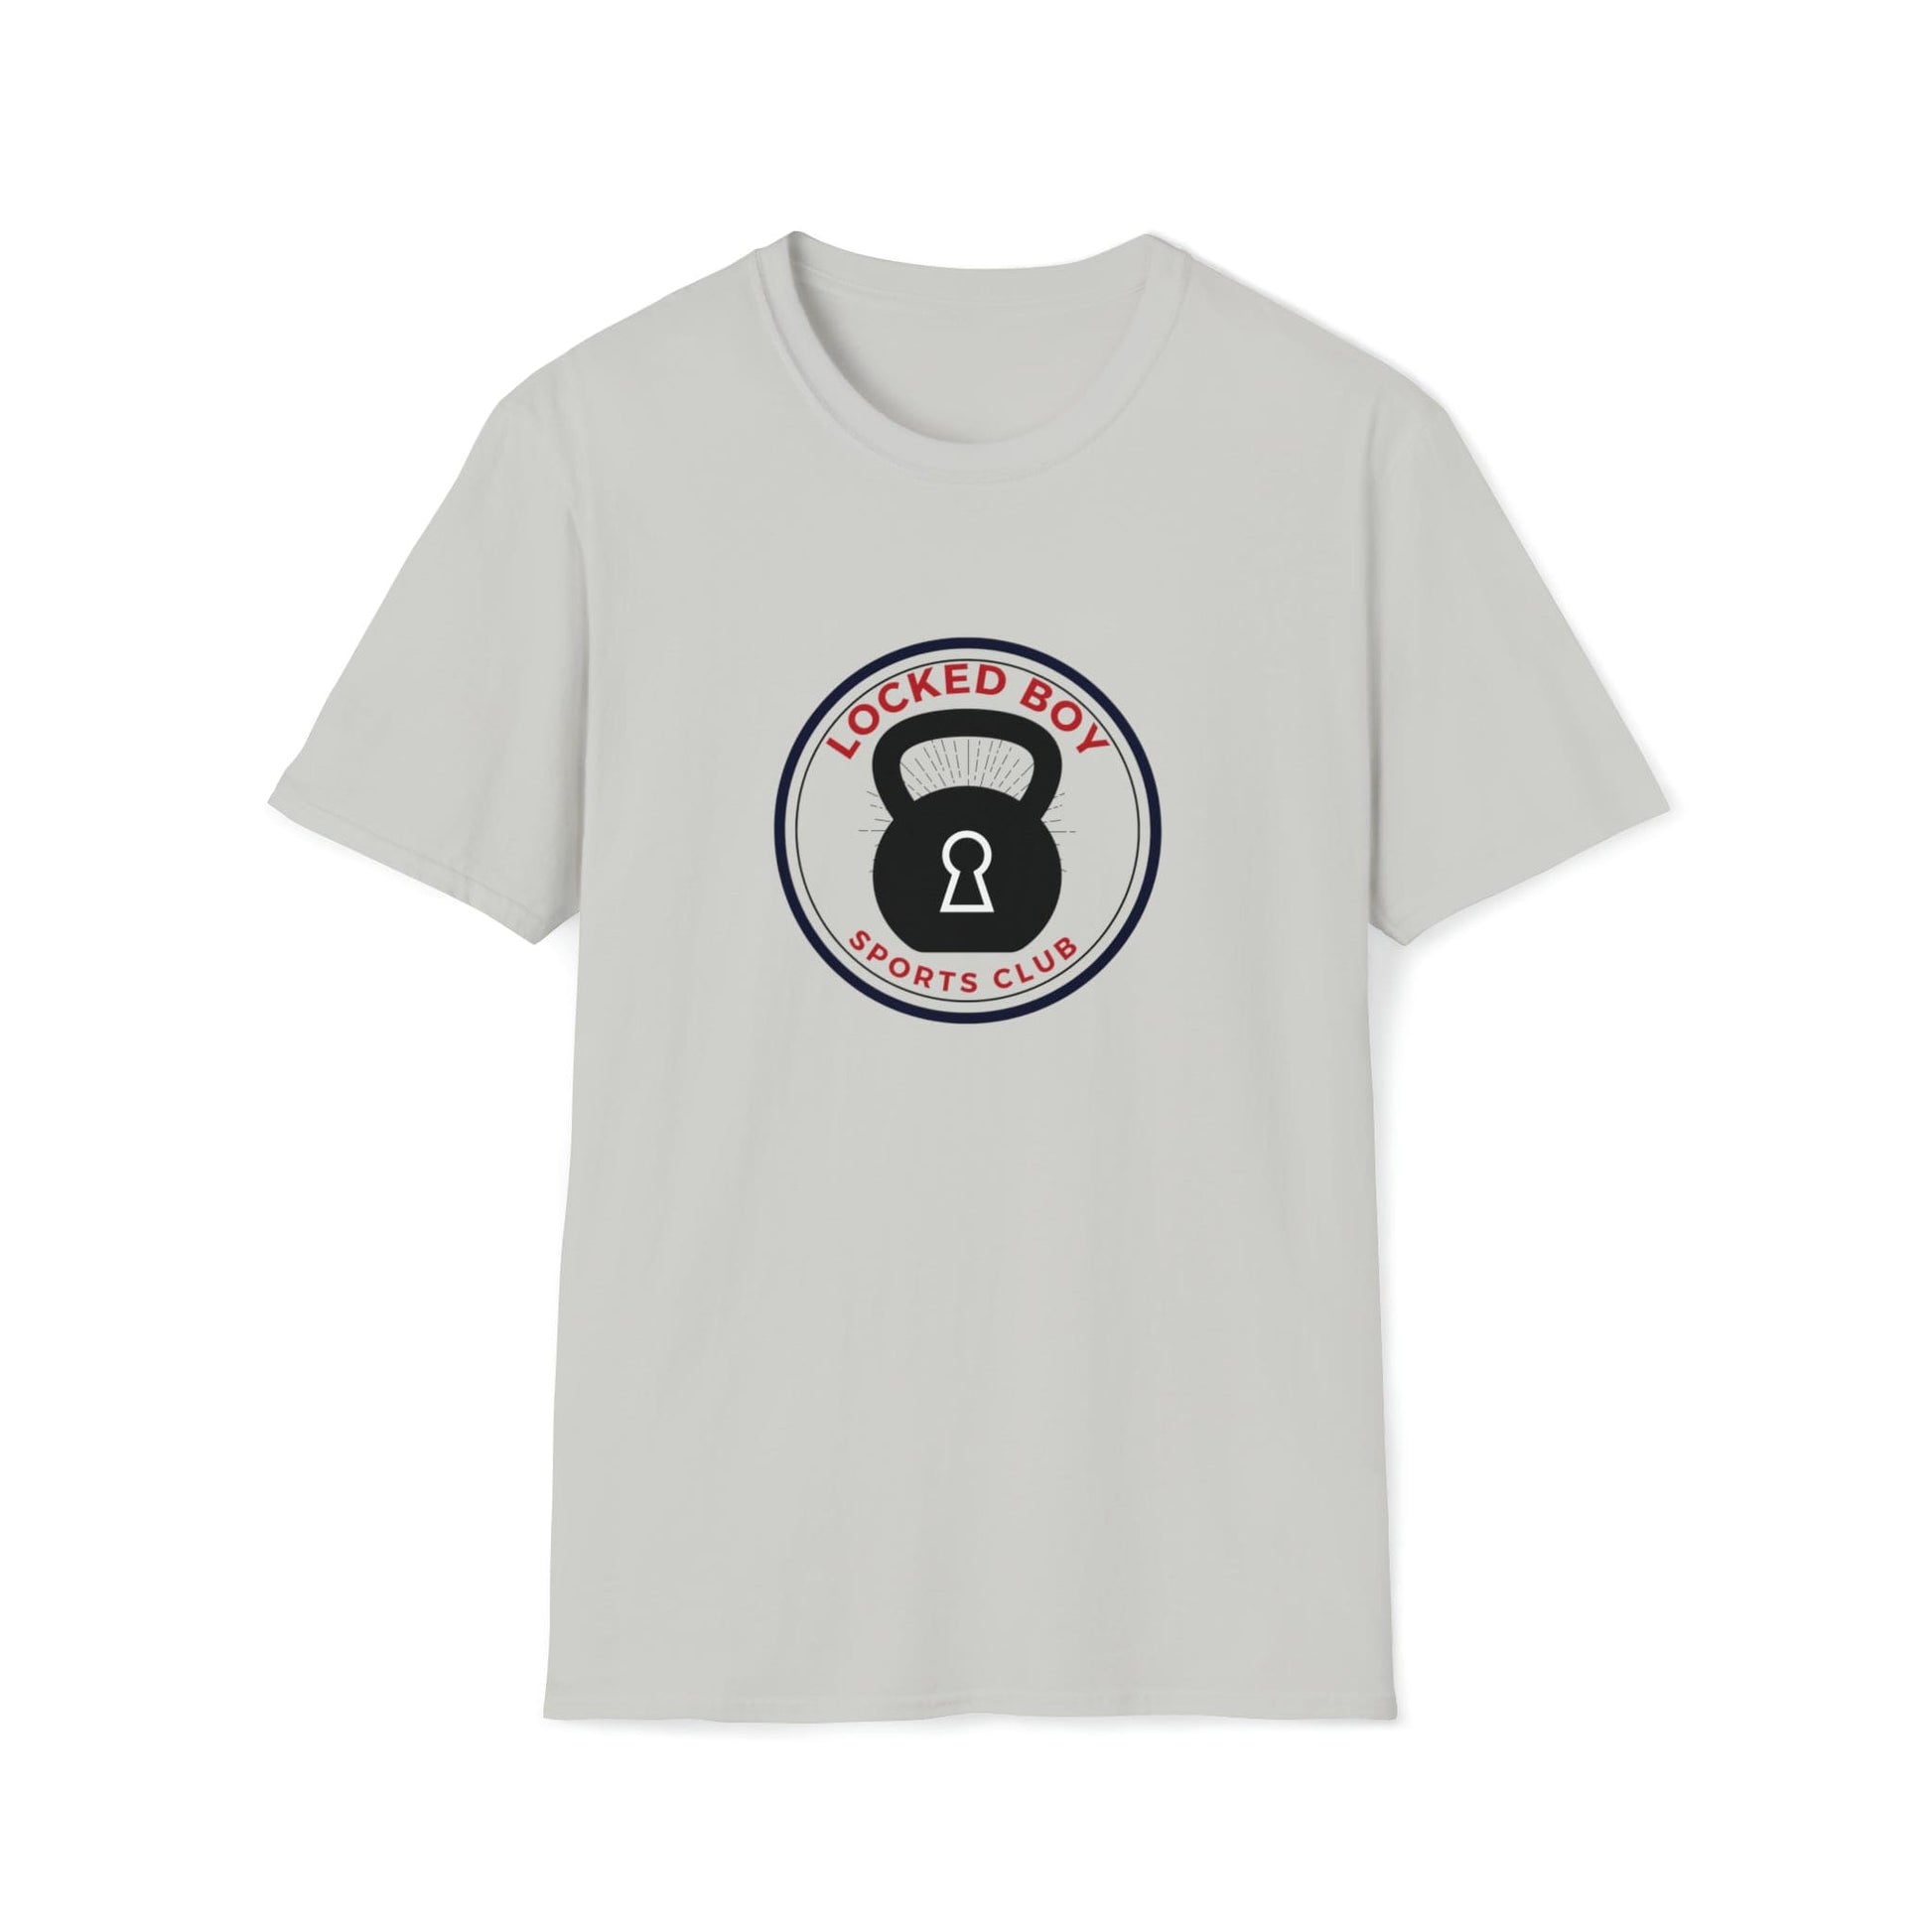 T-Shirt Ice Grey / S LockedBoy Sports Club - Chastity Tshirt Kettlebell LEATHERDADDY BATOR